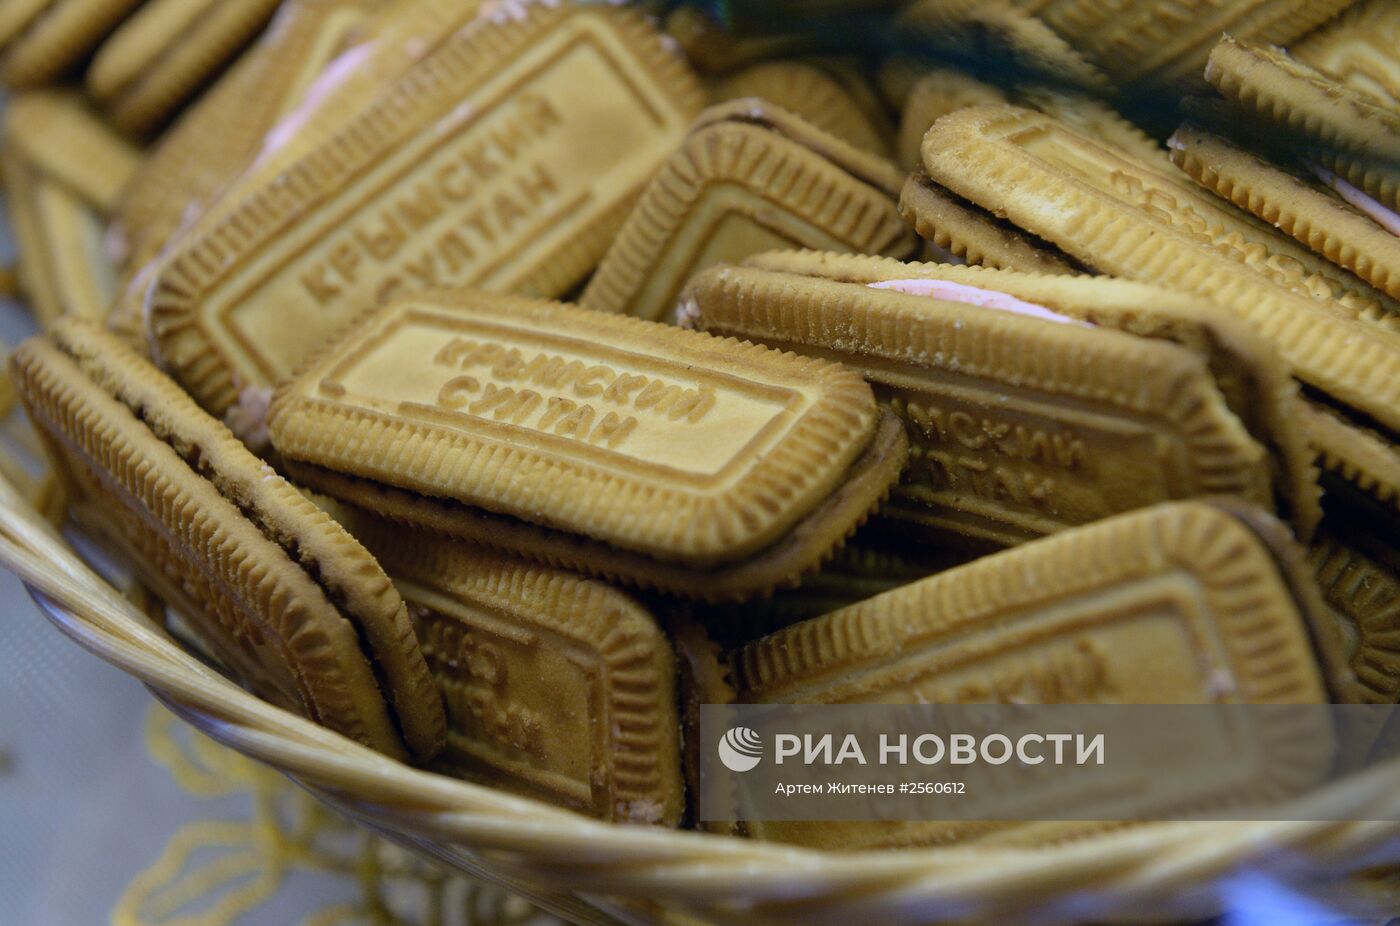 Первый магазин крымских товаров "Крымское подворье" открылся в Подмосковье